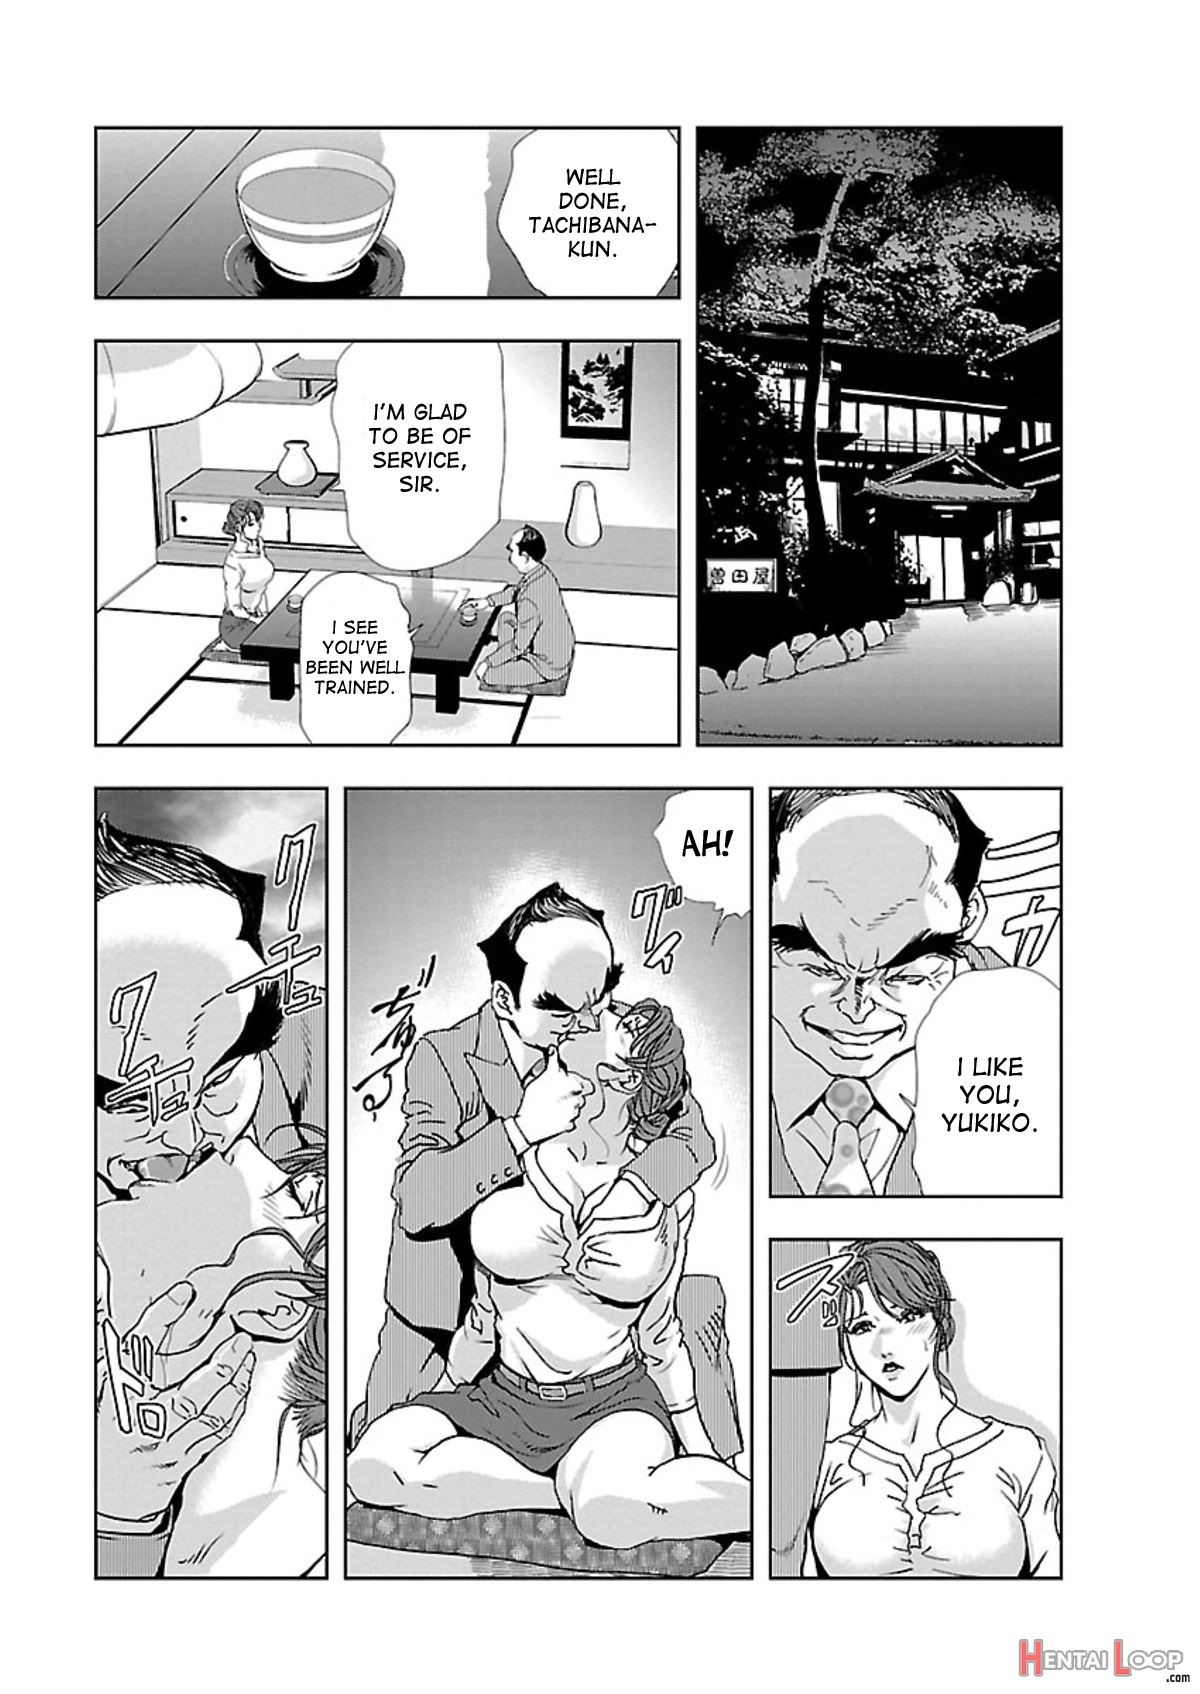 Nikuhisyo Yukiko Volume I Ch. 1-6 page 137